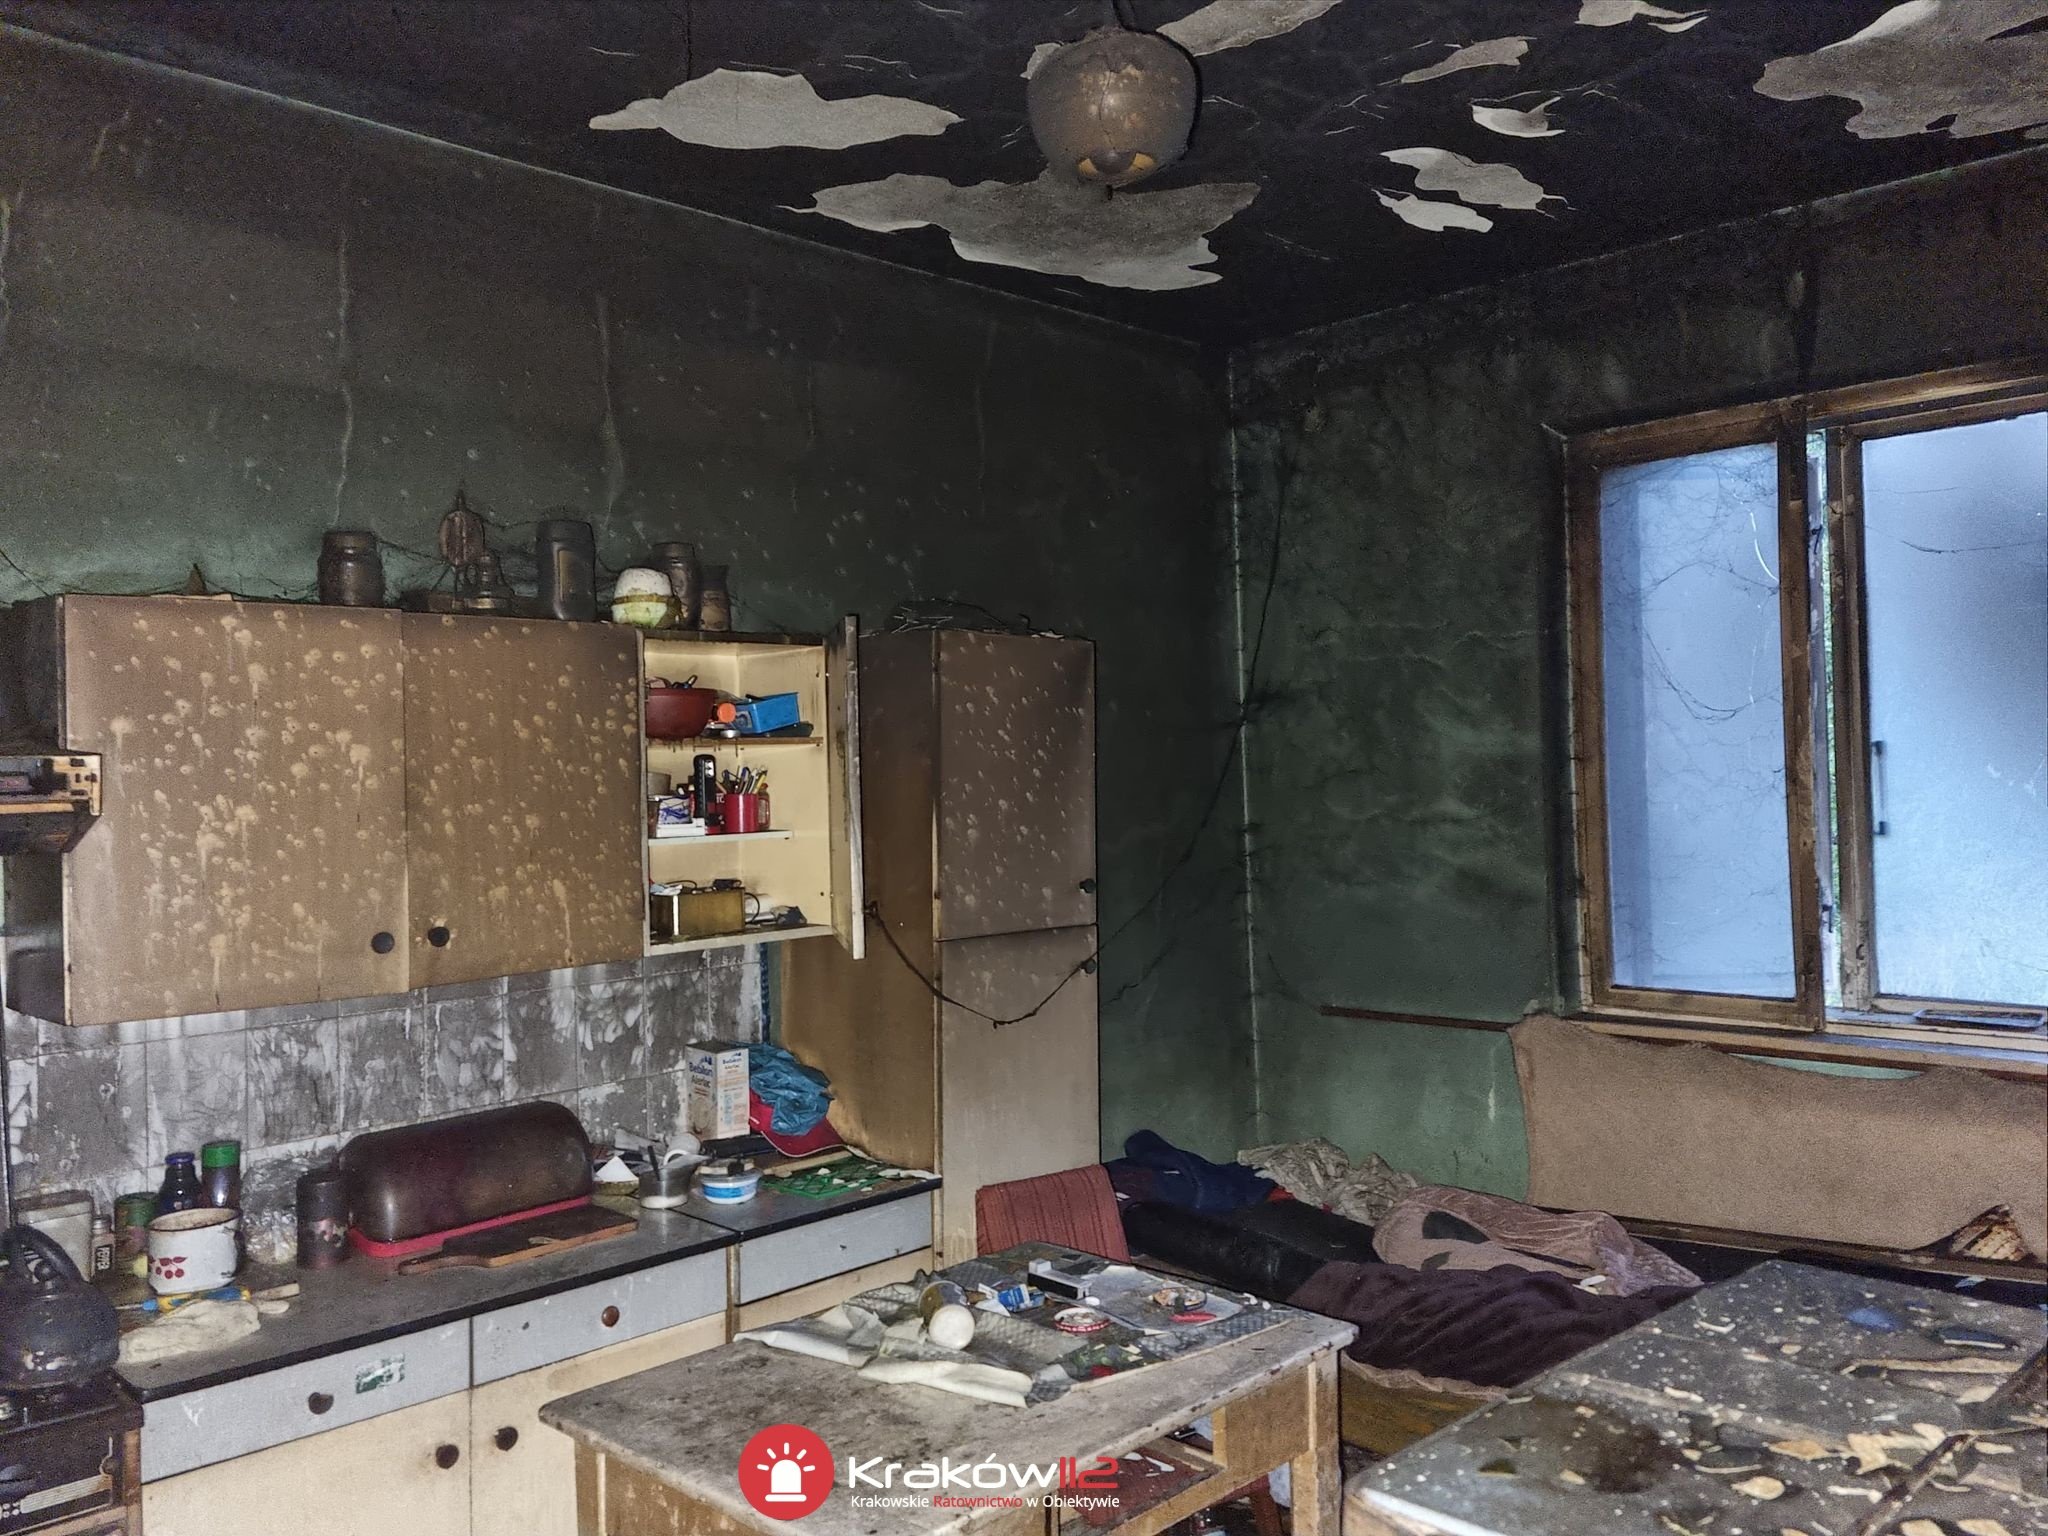 Trzy osoby poszkodowane w pożarze domu. Z ogniem walczyło kilka jednostek strażackich